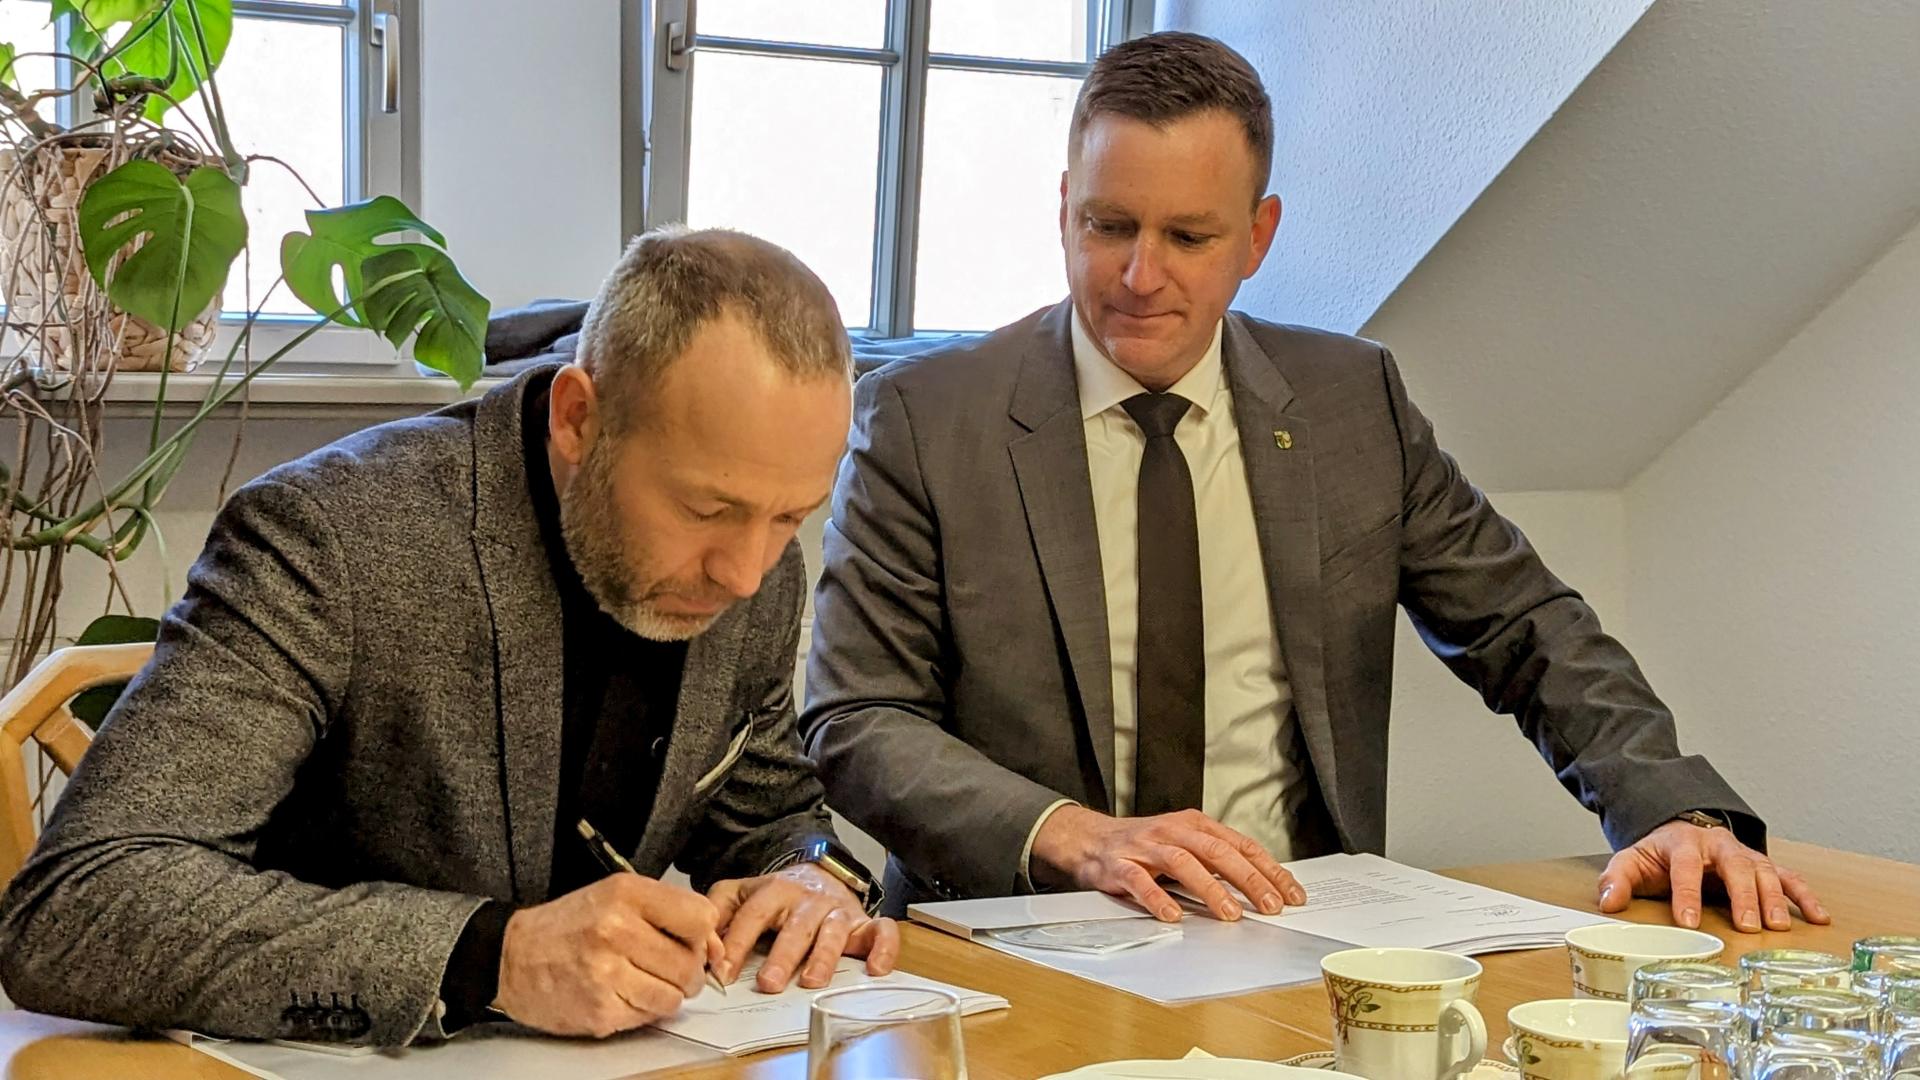 Unterzeichnung des Zuwendungsvertrages (links Martin Flechsig – Geschäftsführer mitteldeutsche IT, rechts Bürgermeister Thomas Peters)